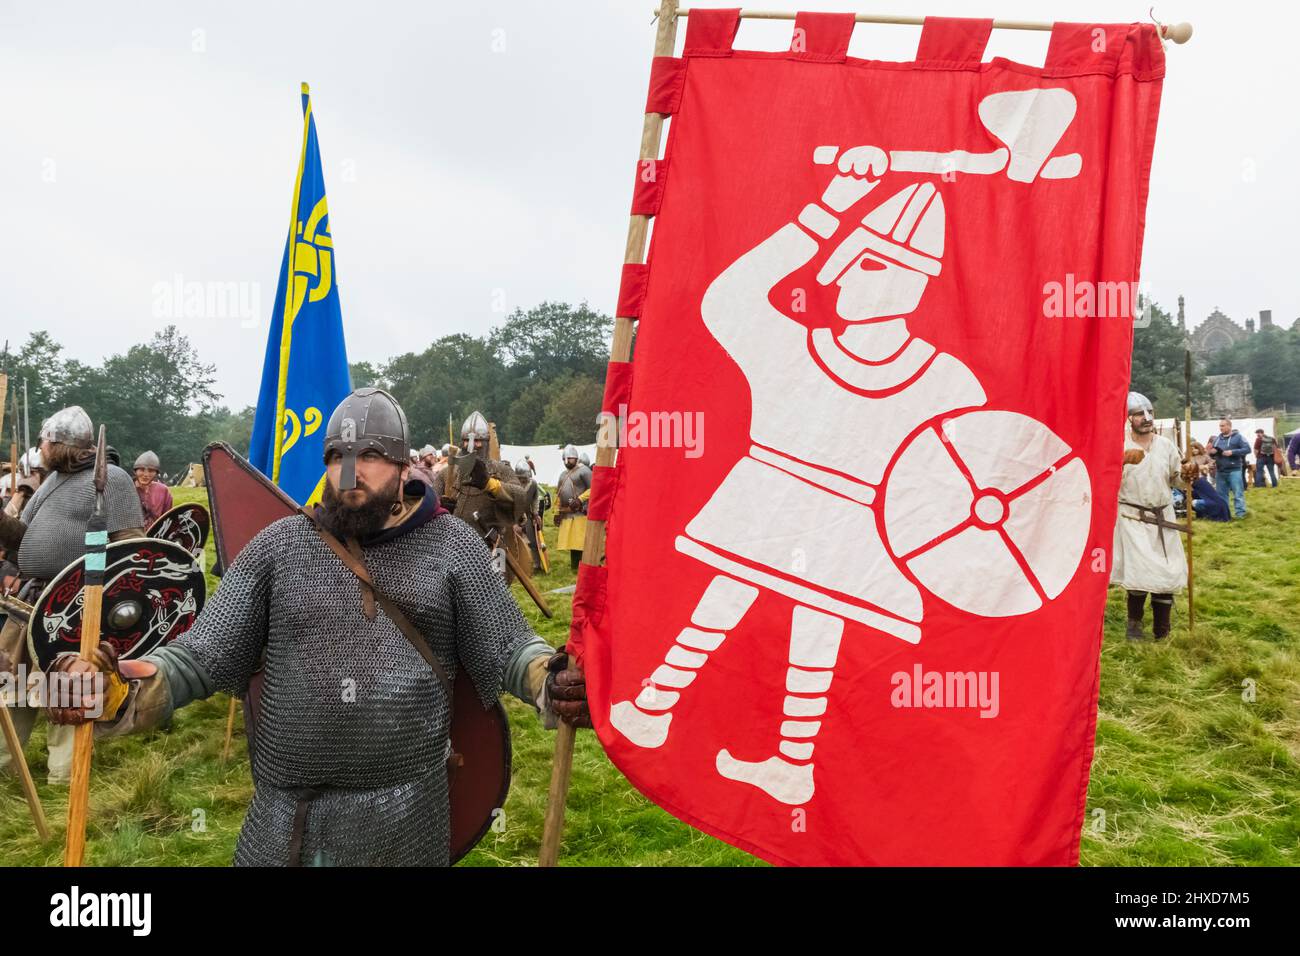 England, East Sussex, Battle, The Annual Battle of Hastings 1066 Re-enactment Festival, Teilnehmer gekleidet in mittelalterliche Sächsische Rüstungsholding Flagge Stockfoto